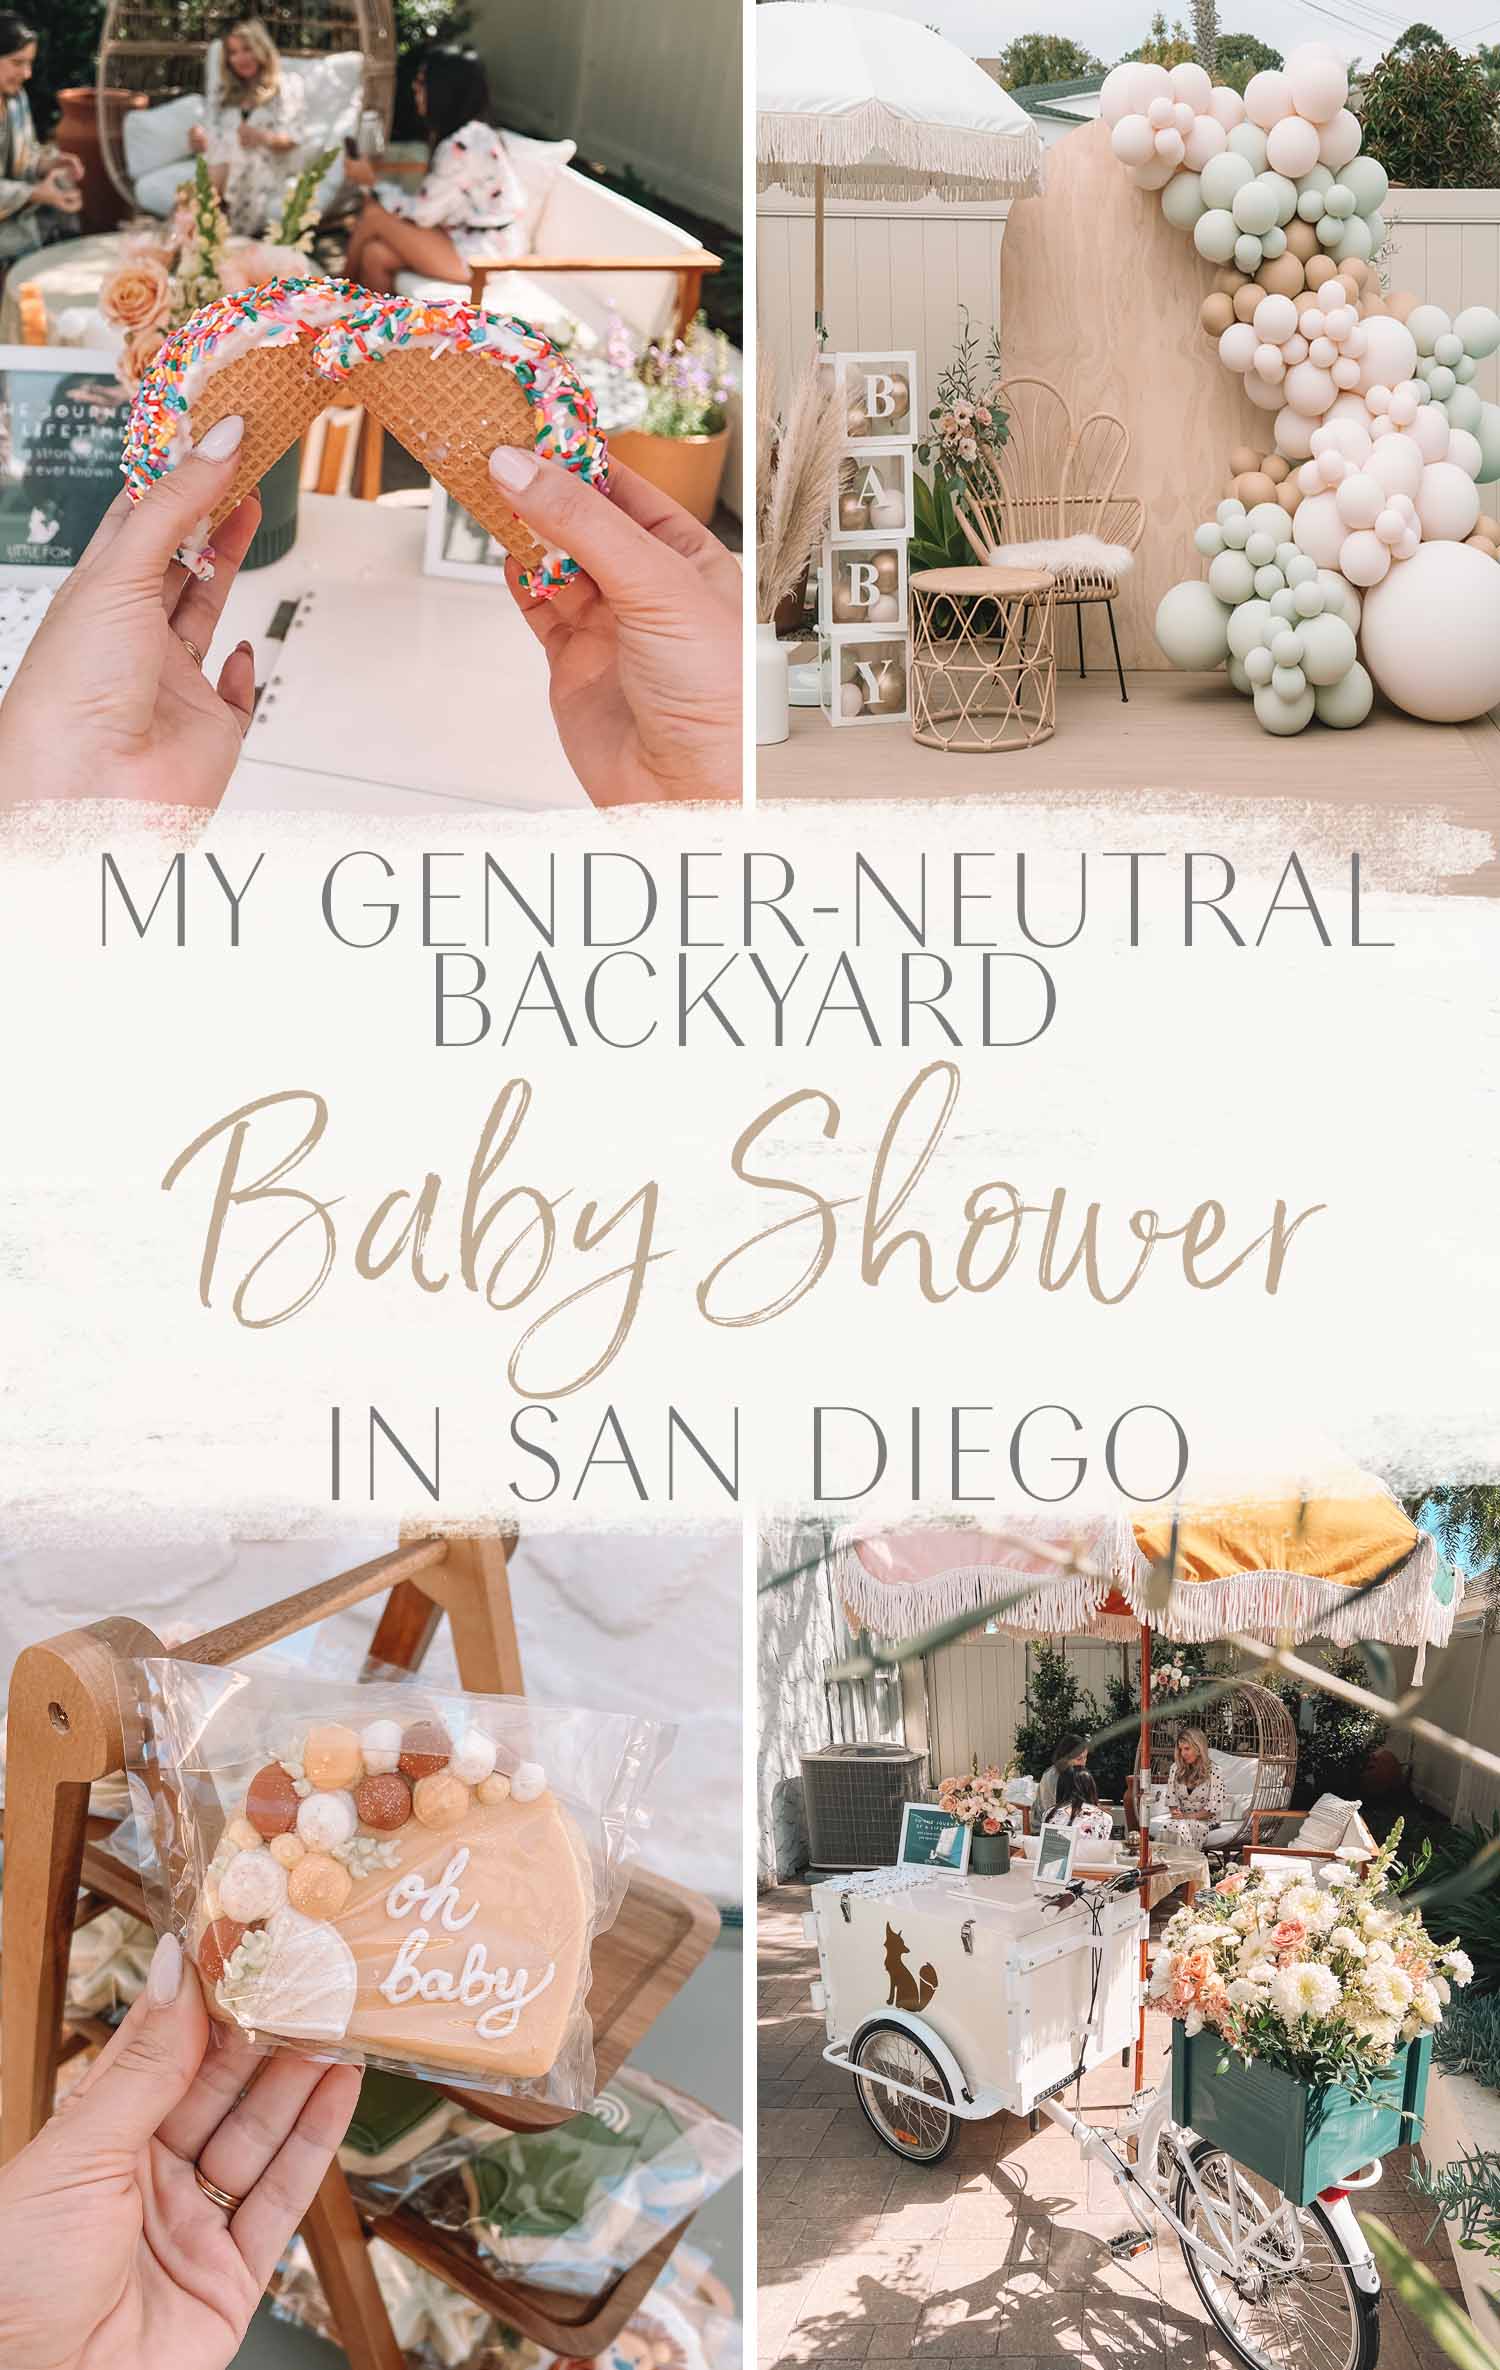 My Gender-Neutral Backyard Baby Shower in San Diego • The Blonde